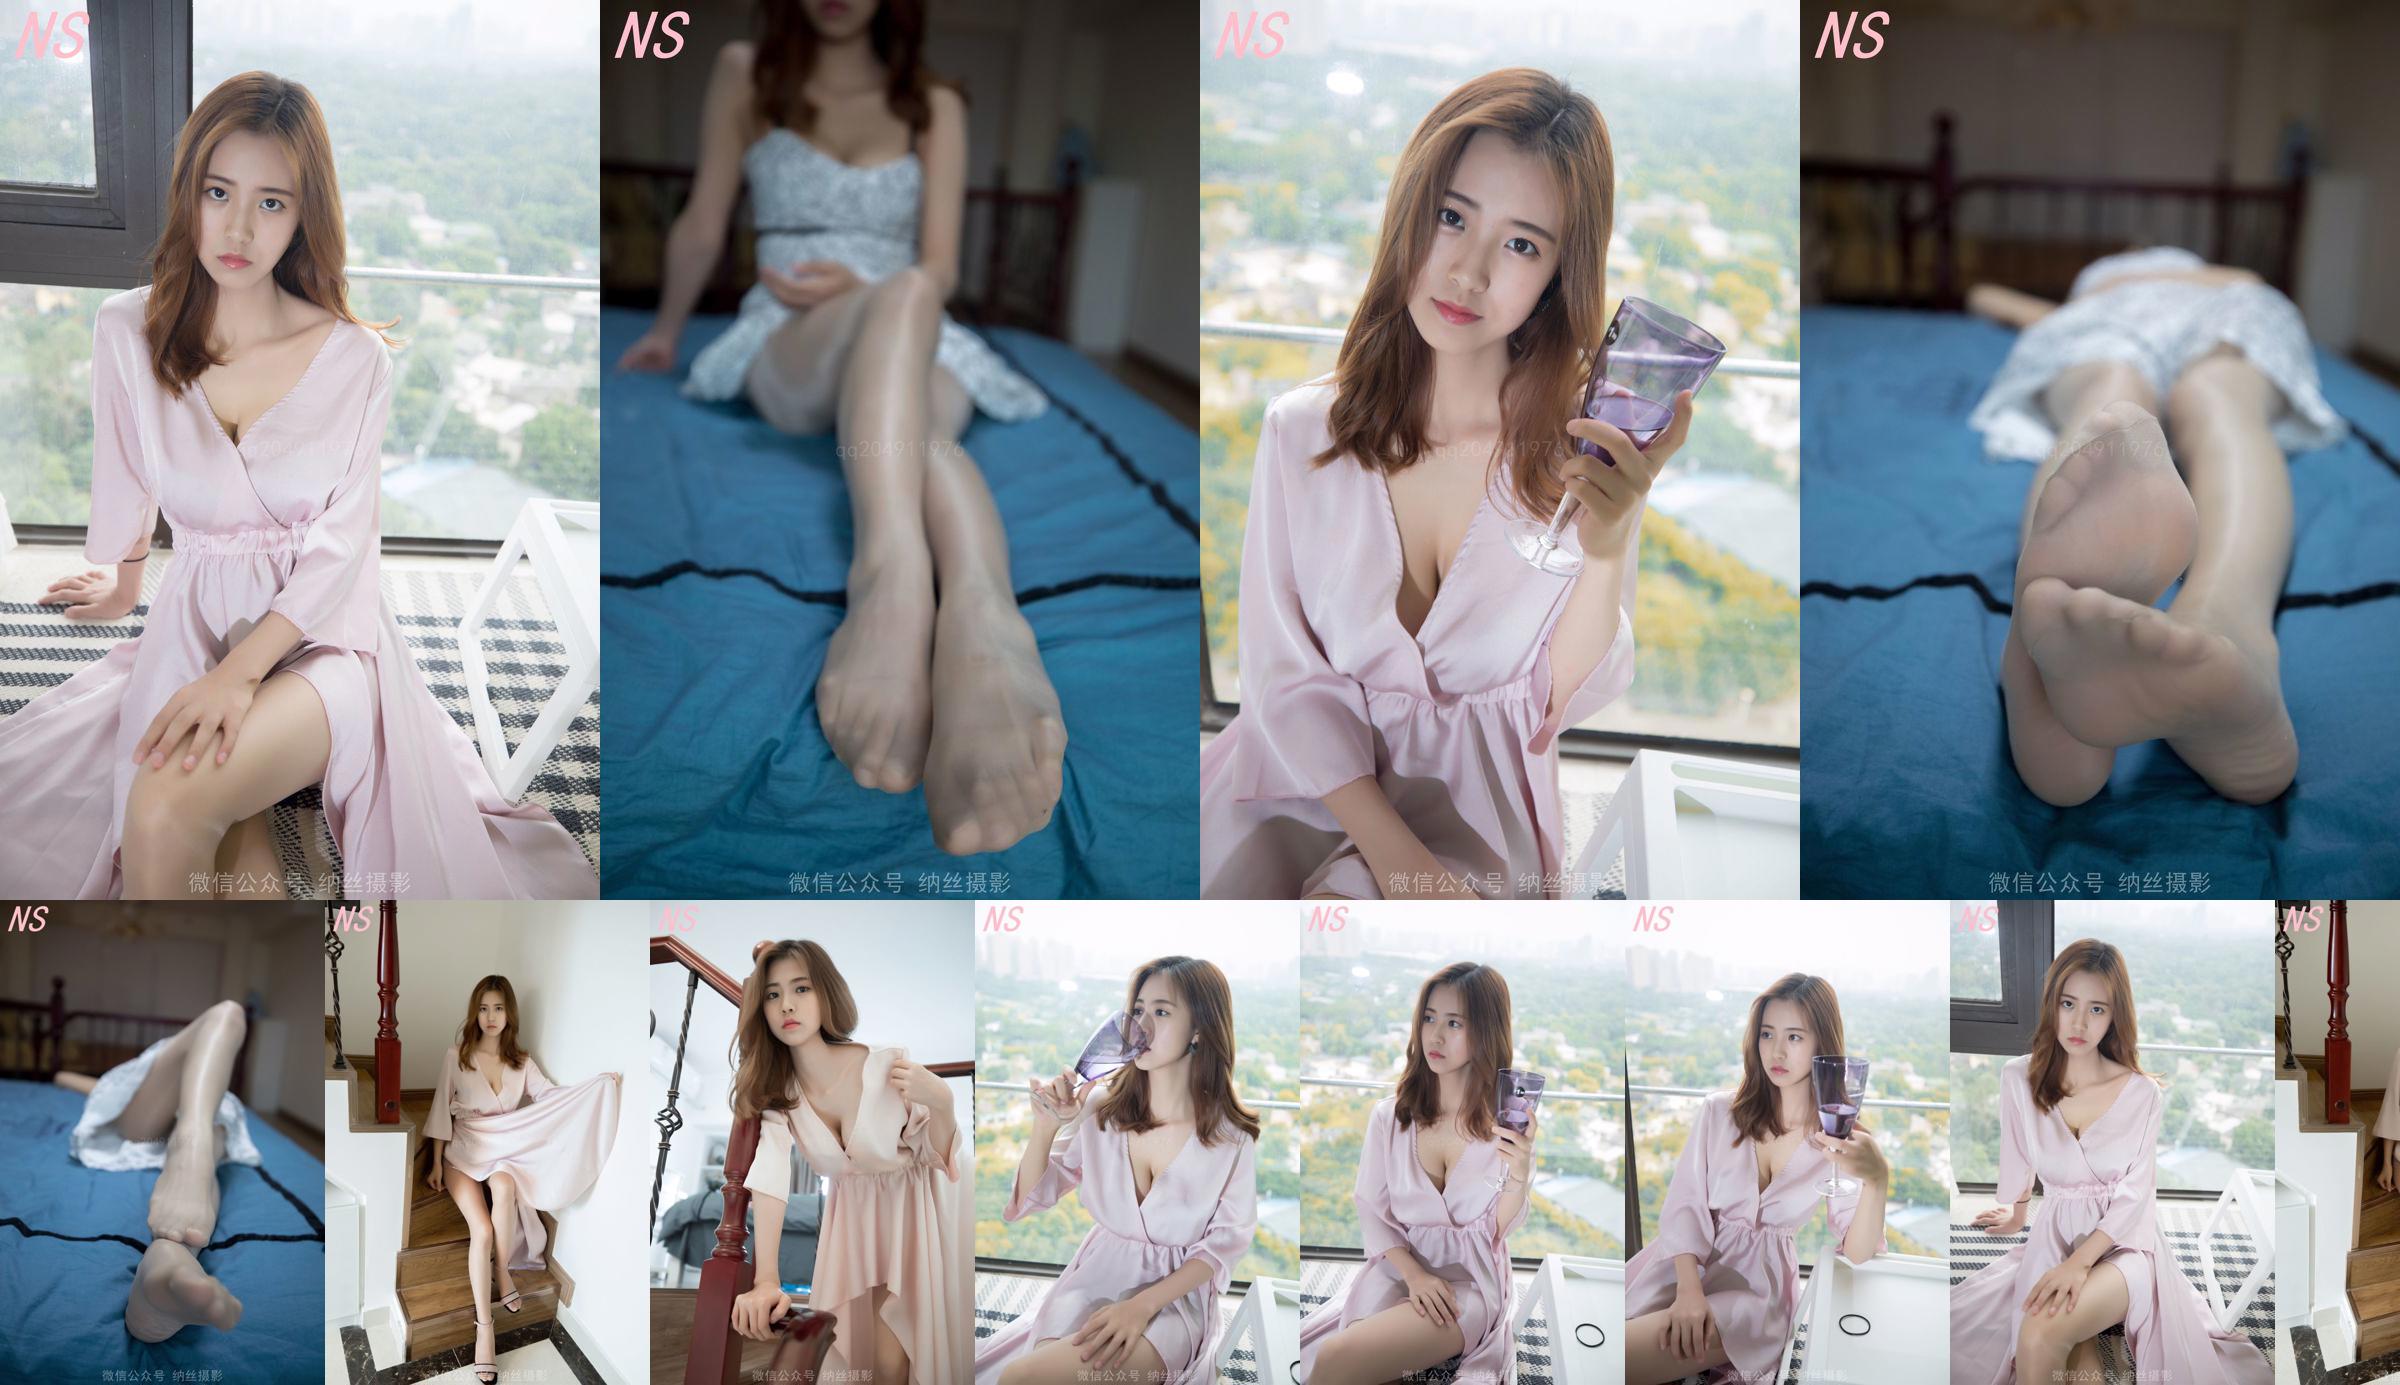 Beauty anchor Hanshuang "The Temptation of Pajamas" [Nasi Photography] No.cd8a7c Page 18